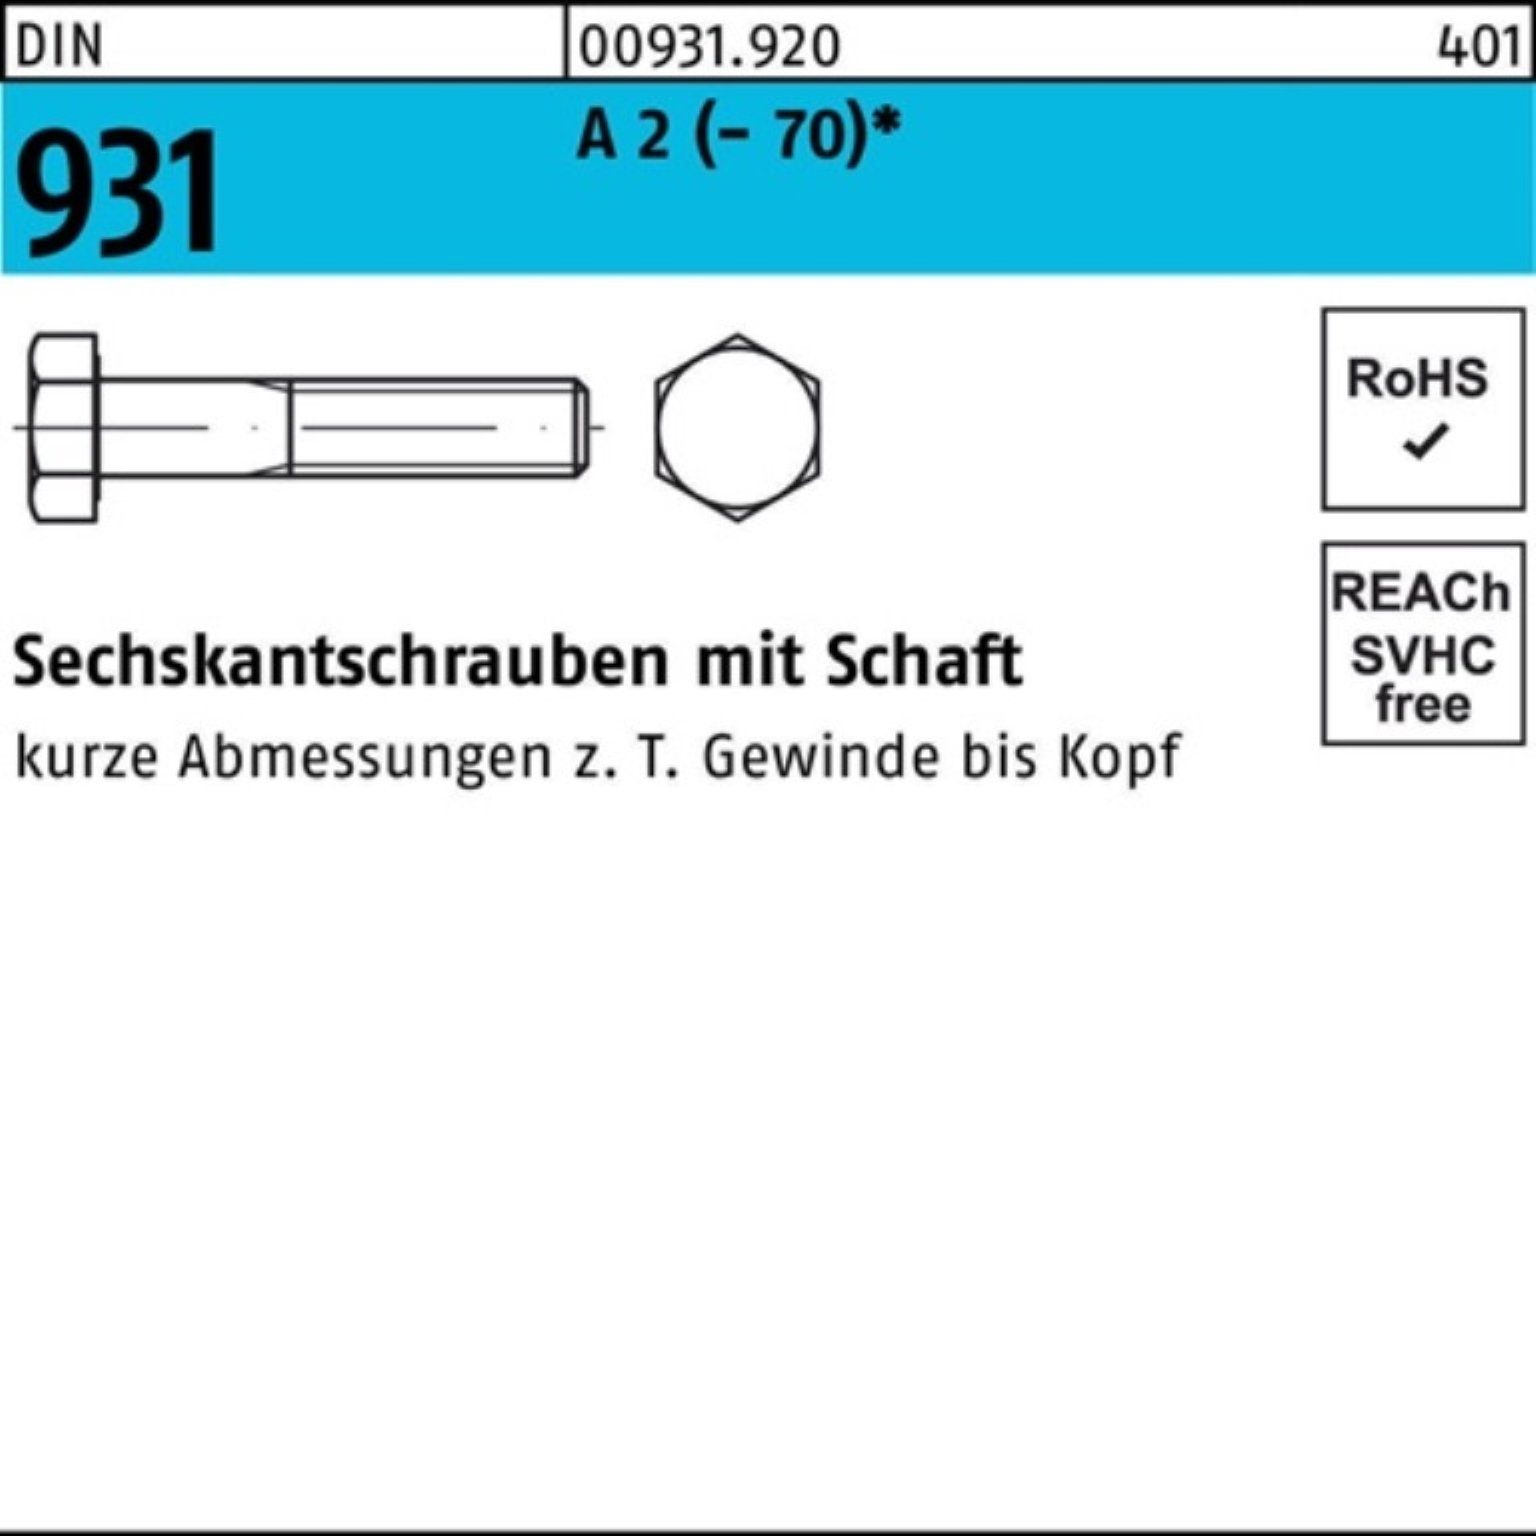 A Stü DIN Reyher 2 150 100er 931 Sechskantschraube Pack M12x 1 Sechskantschraube (70) Schaft